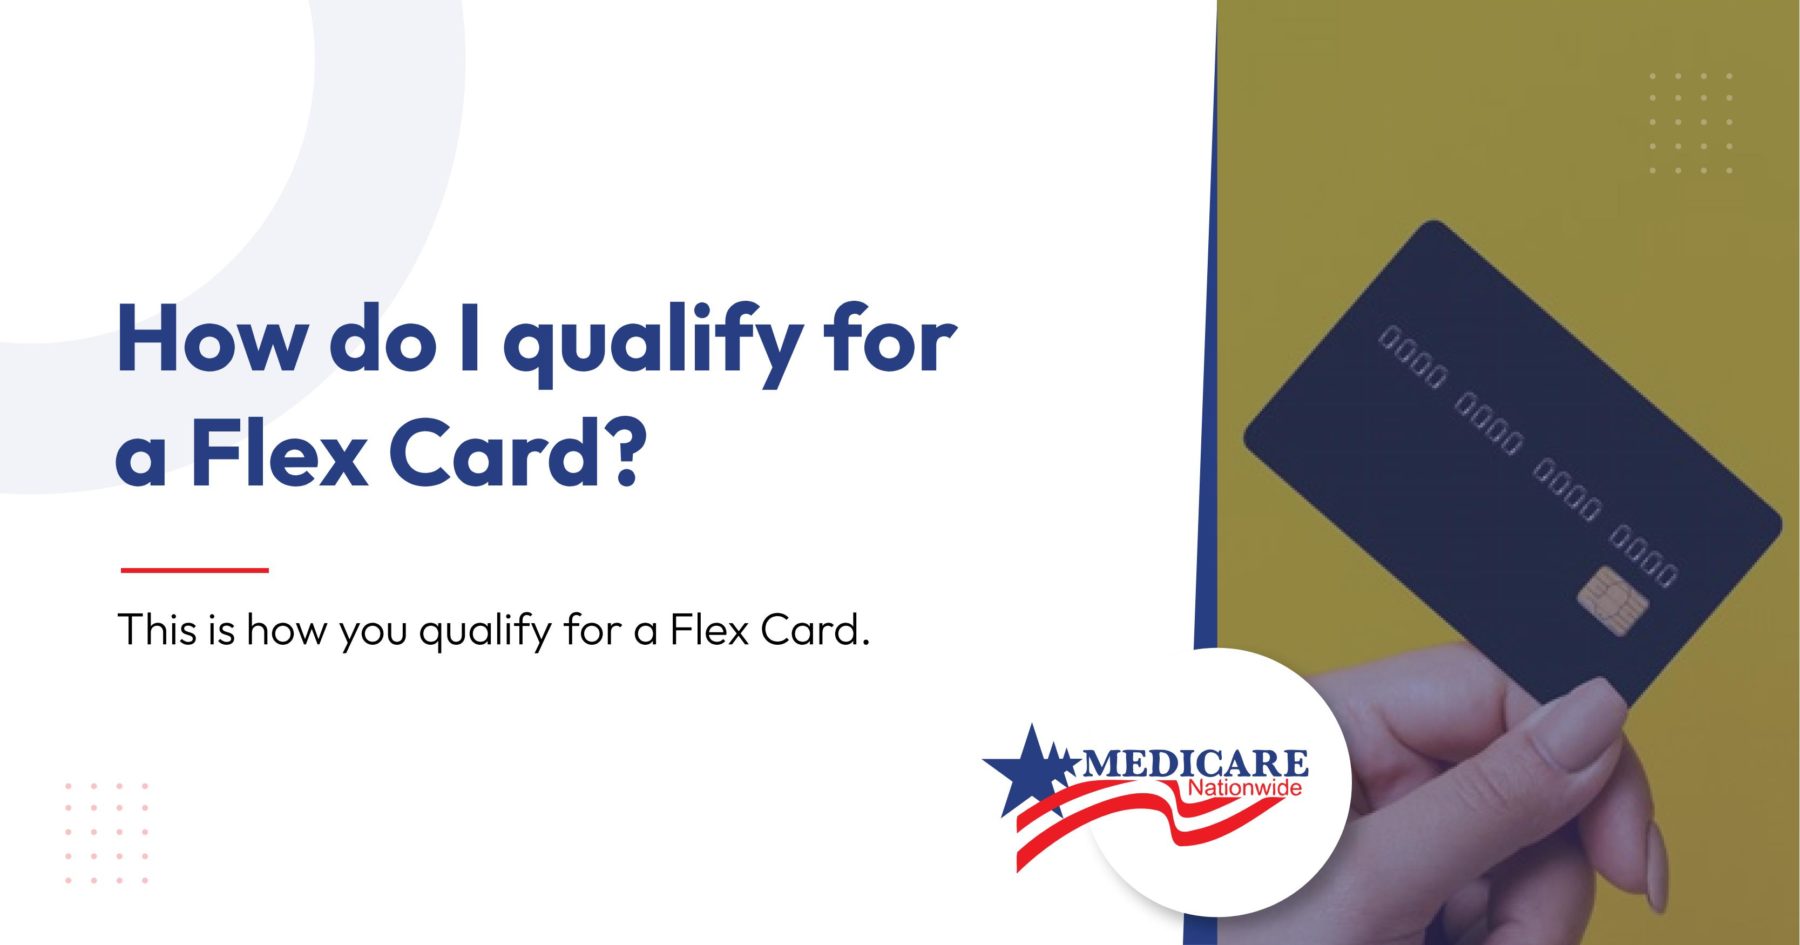 How do I qualify for a Flex Card